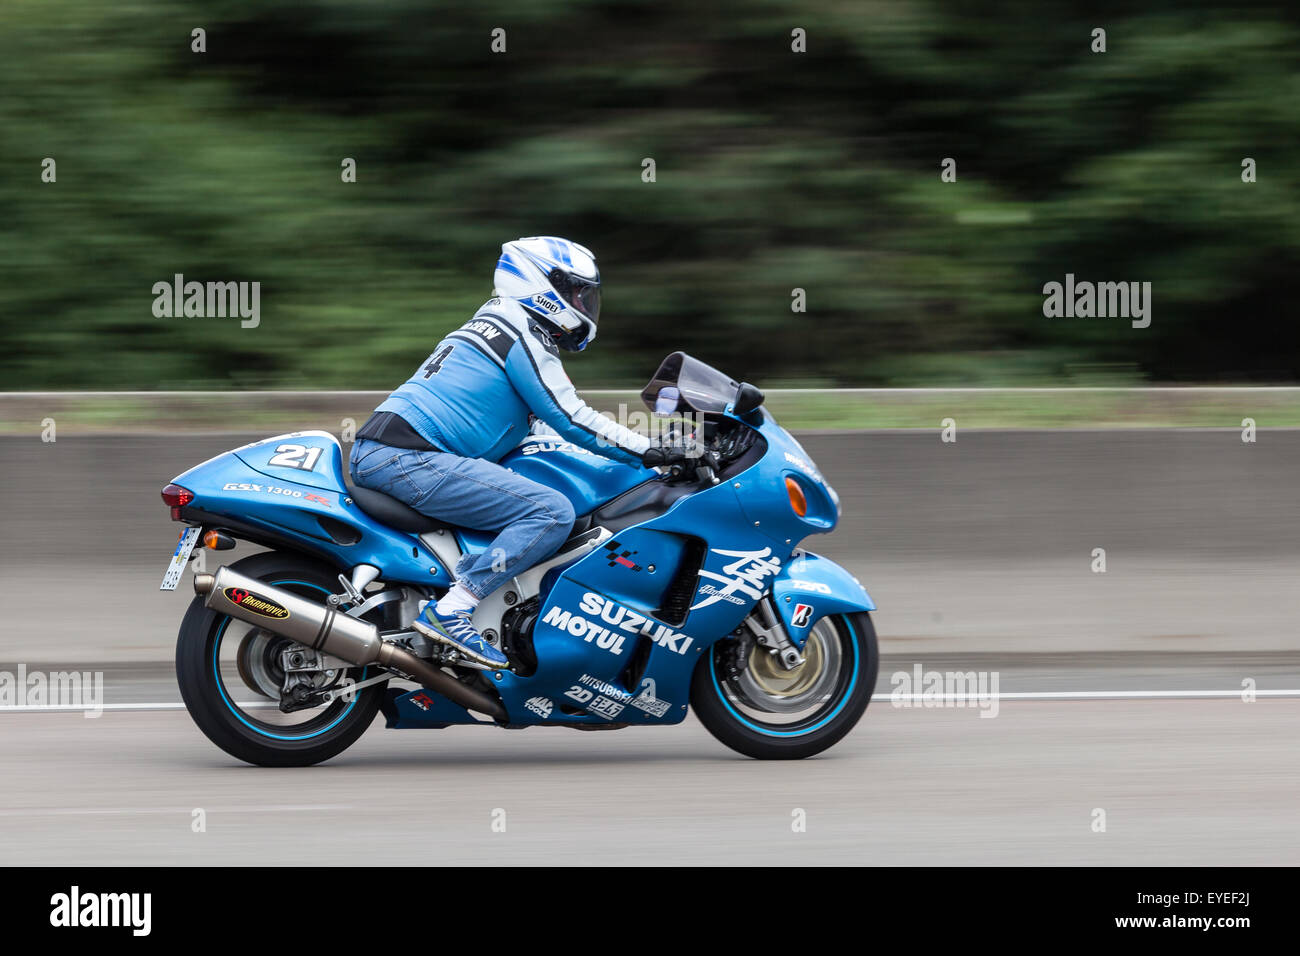 Suzuki Hayabusa GSX 1300 R motociclo in movimento veloce sulla autostrada A5 nei pressi di Francoforte. Luglio 26, 2015 a Francoforte sul Meno, Germania Foto Stock